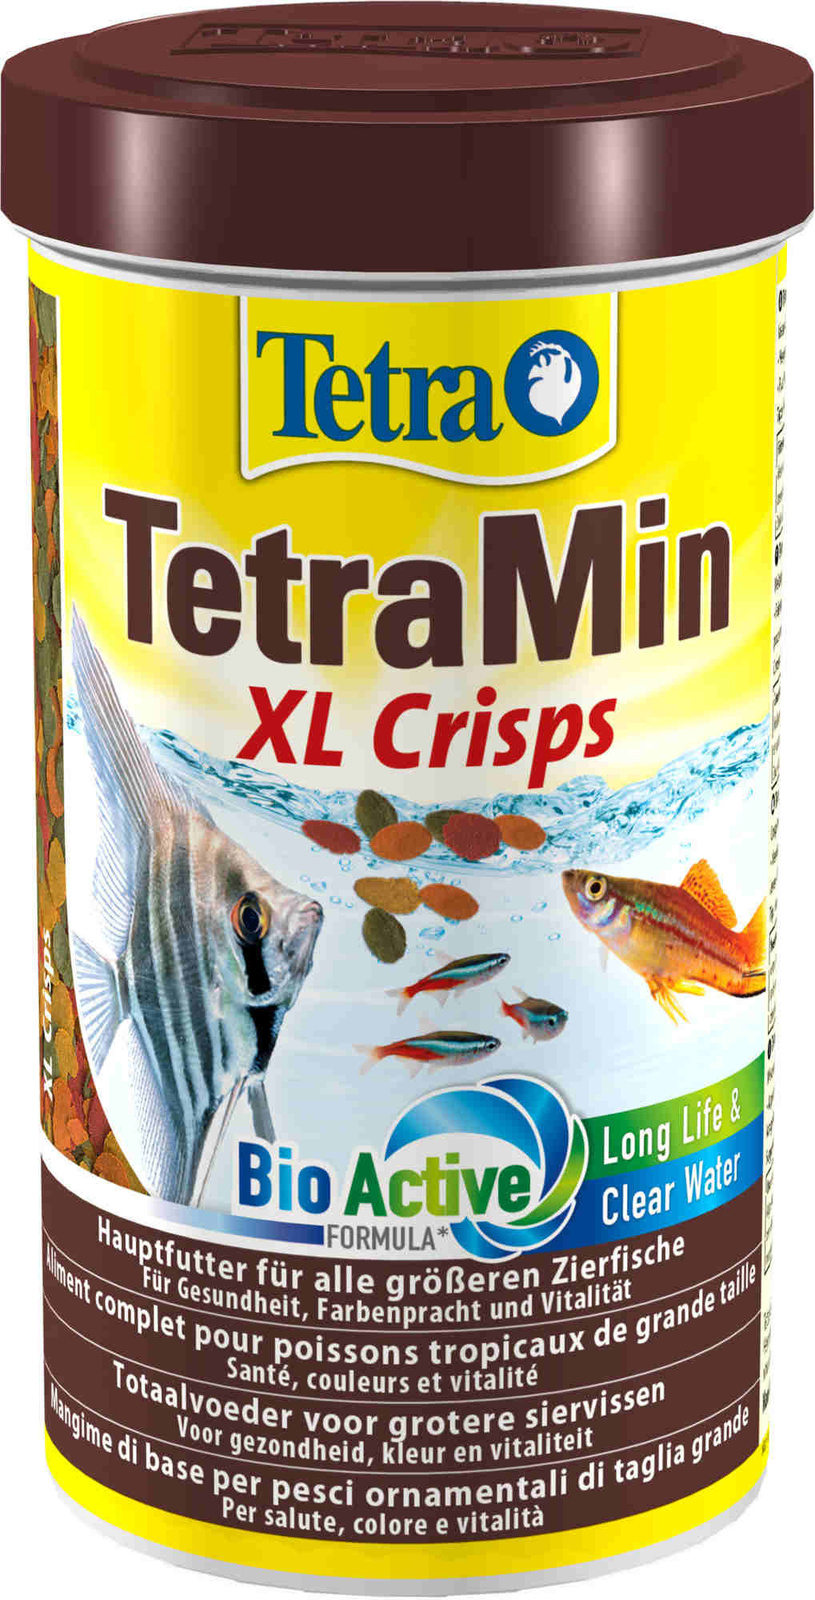 Tetra (корма) Tetra (корма) корм для всех видов крупных рыб, крупные чипсы (100 г) tetra корма tetra корма корм для всех видов крупных рыб крупные гранулы 82 г